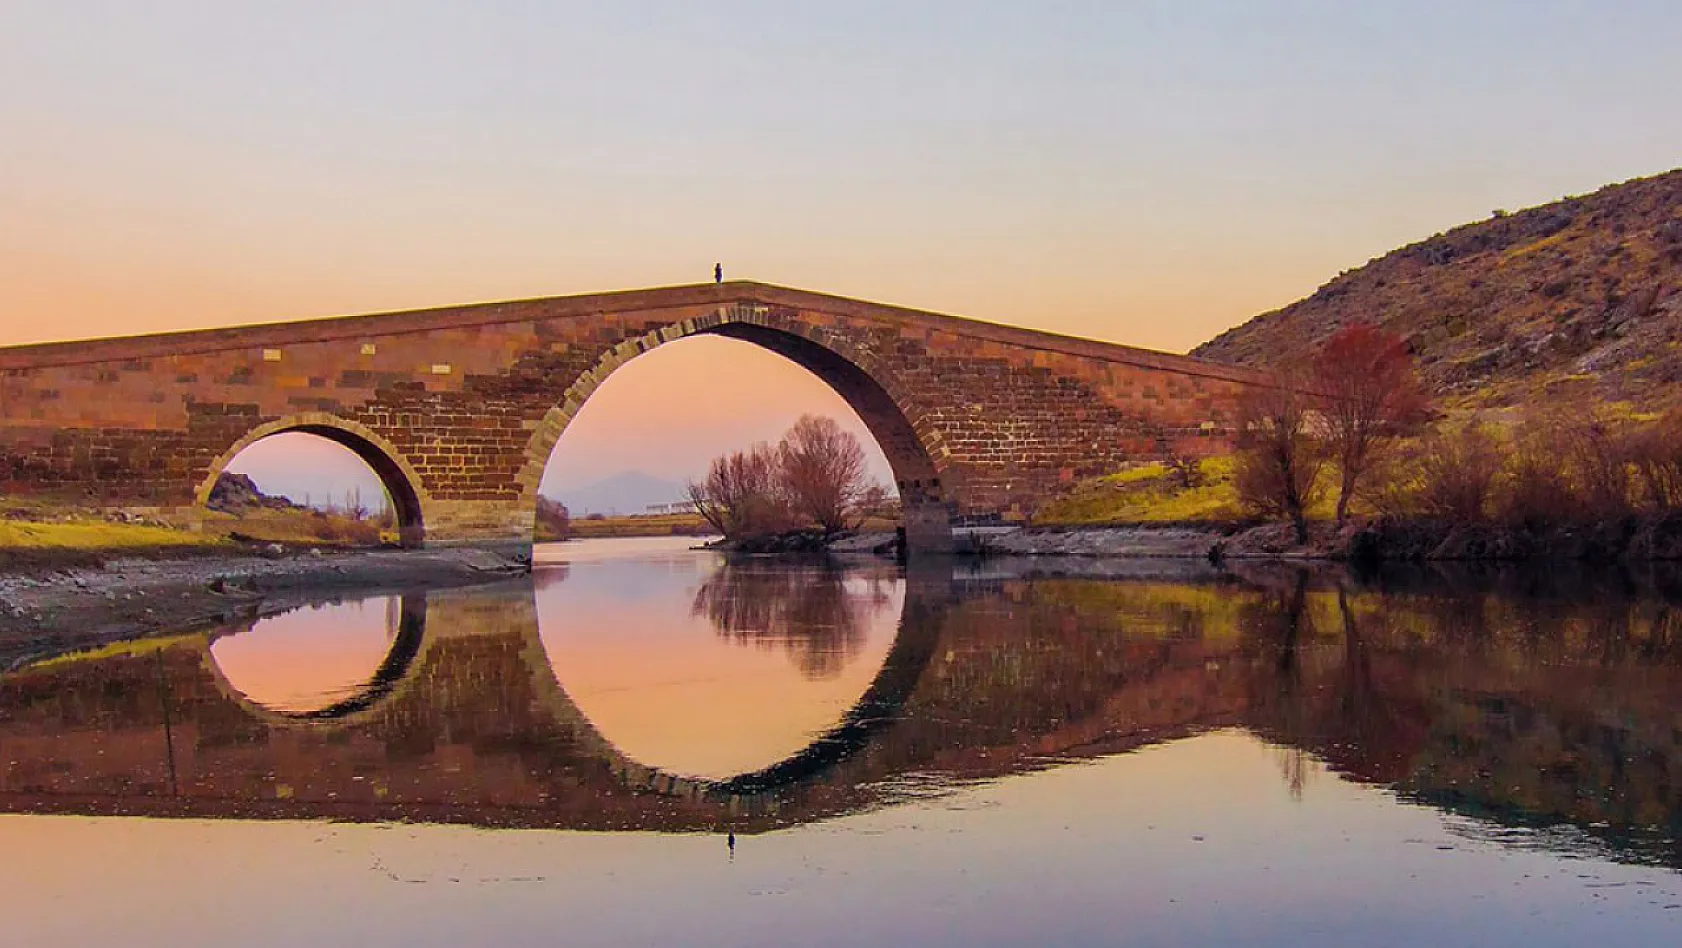 Bu köprü Kayseri-Kırşehir arası ulaşımı sağlamak için yapılmış...